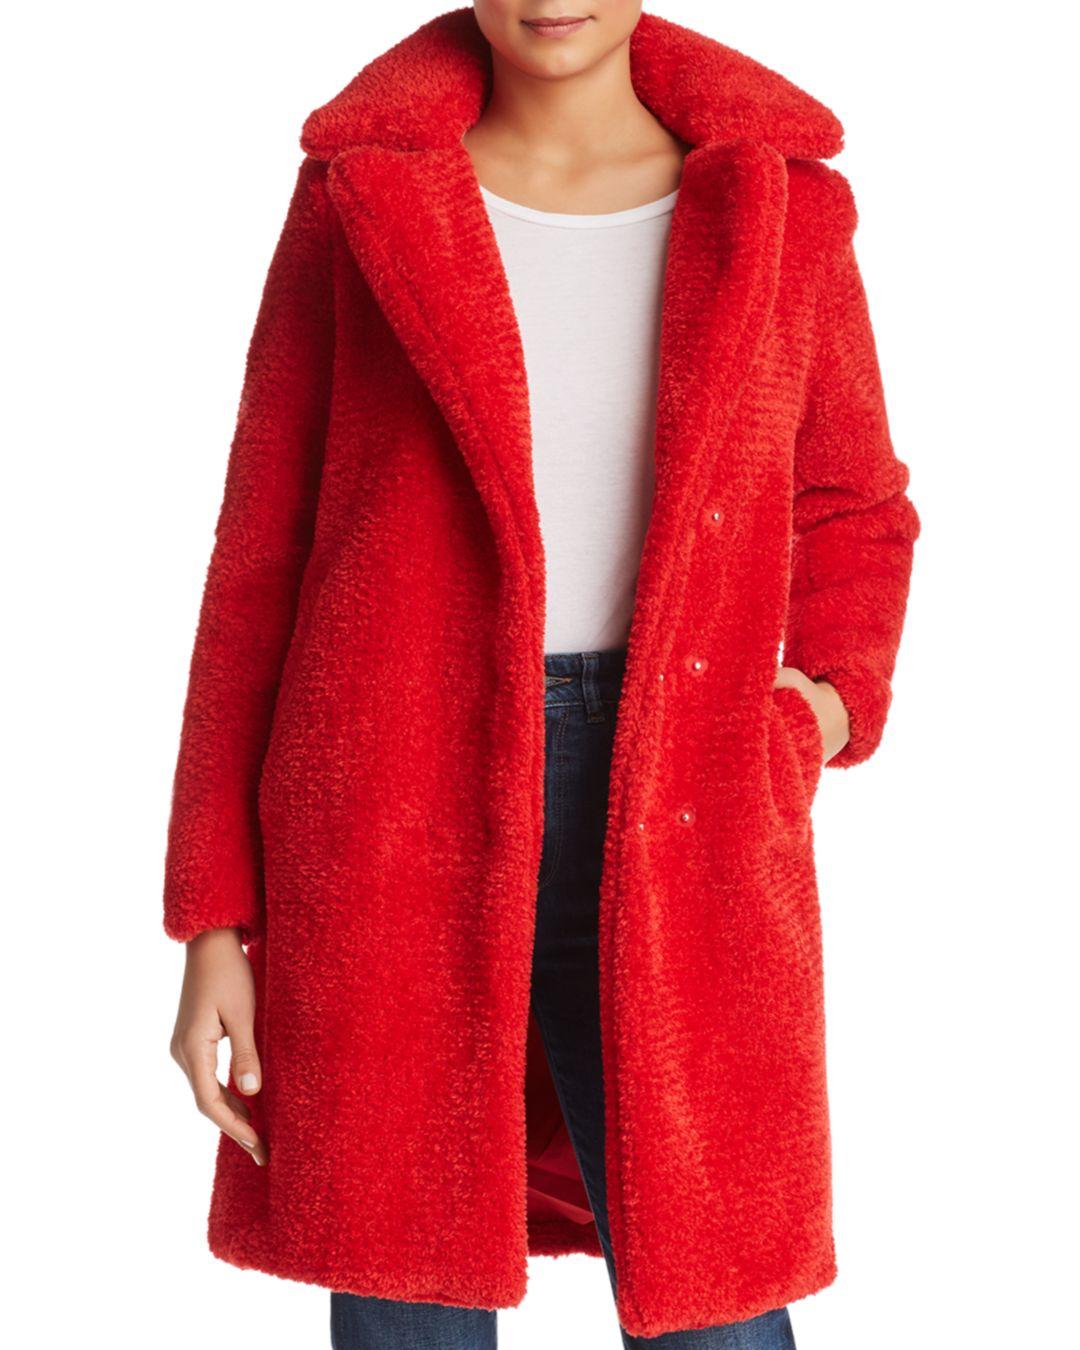 Aanvrager eindpunt Stijgen Vero Moda Lala Faux - Fur Teddy Coat in Red - Lyst